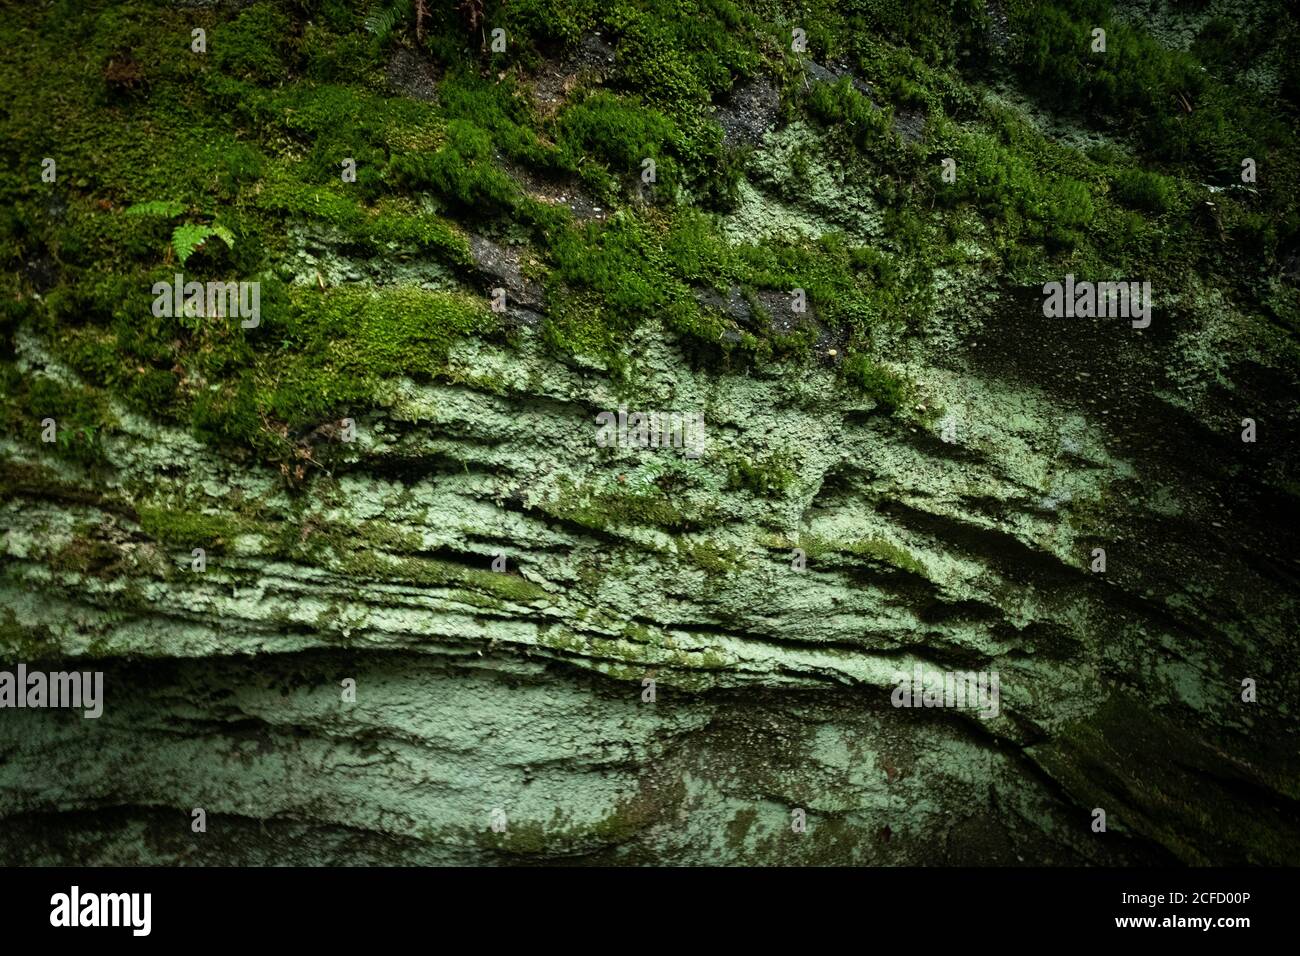 Panama Rocks Scenic Park, Contea di Chautauqua, New York, USA - un'antica foresta pietrificata di conglomerato di quarzo Foto Stock